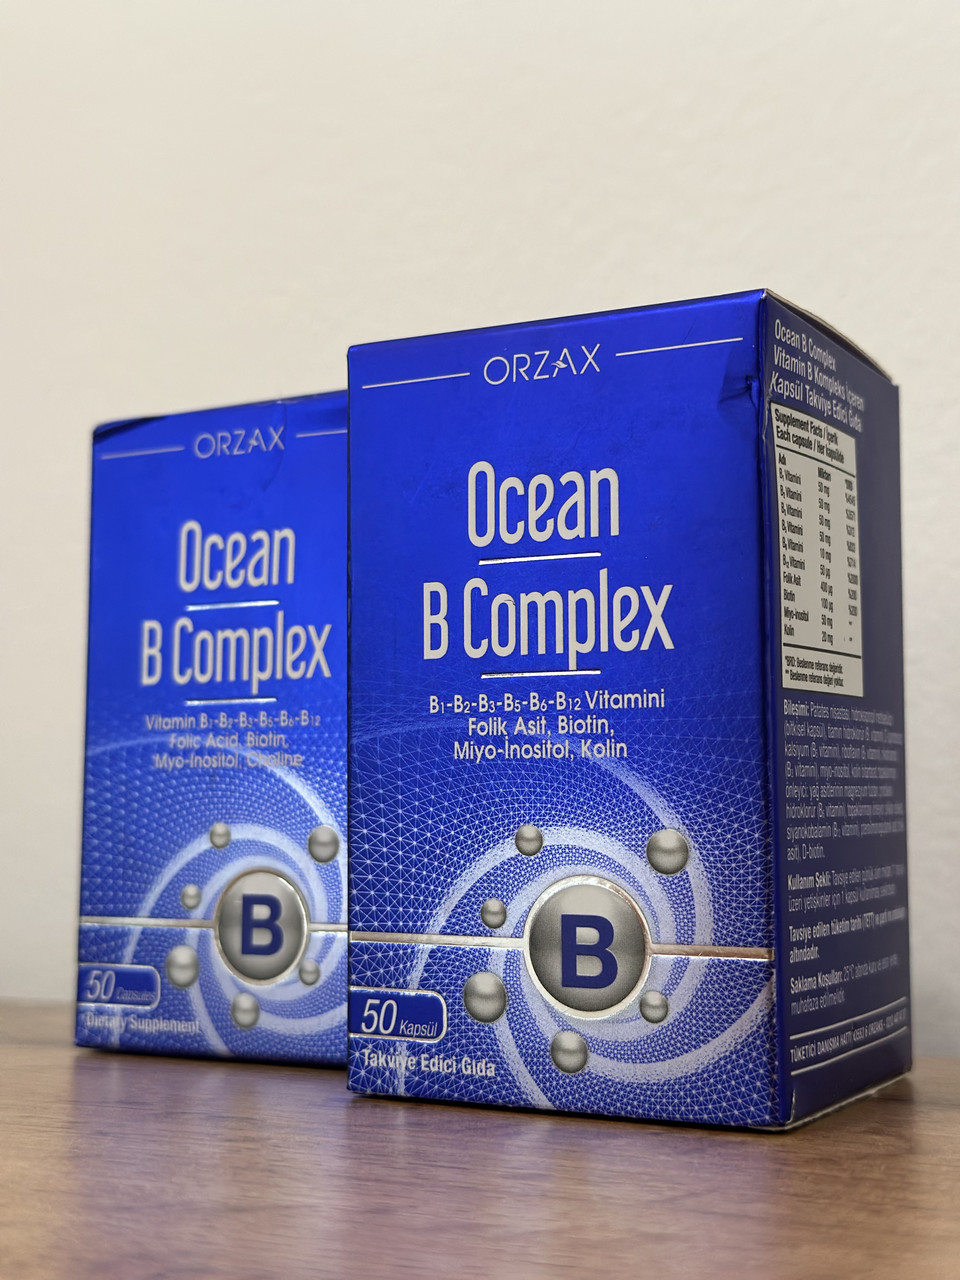 ORZAX Ocean B Complex, 50 капсул